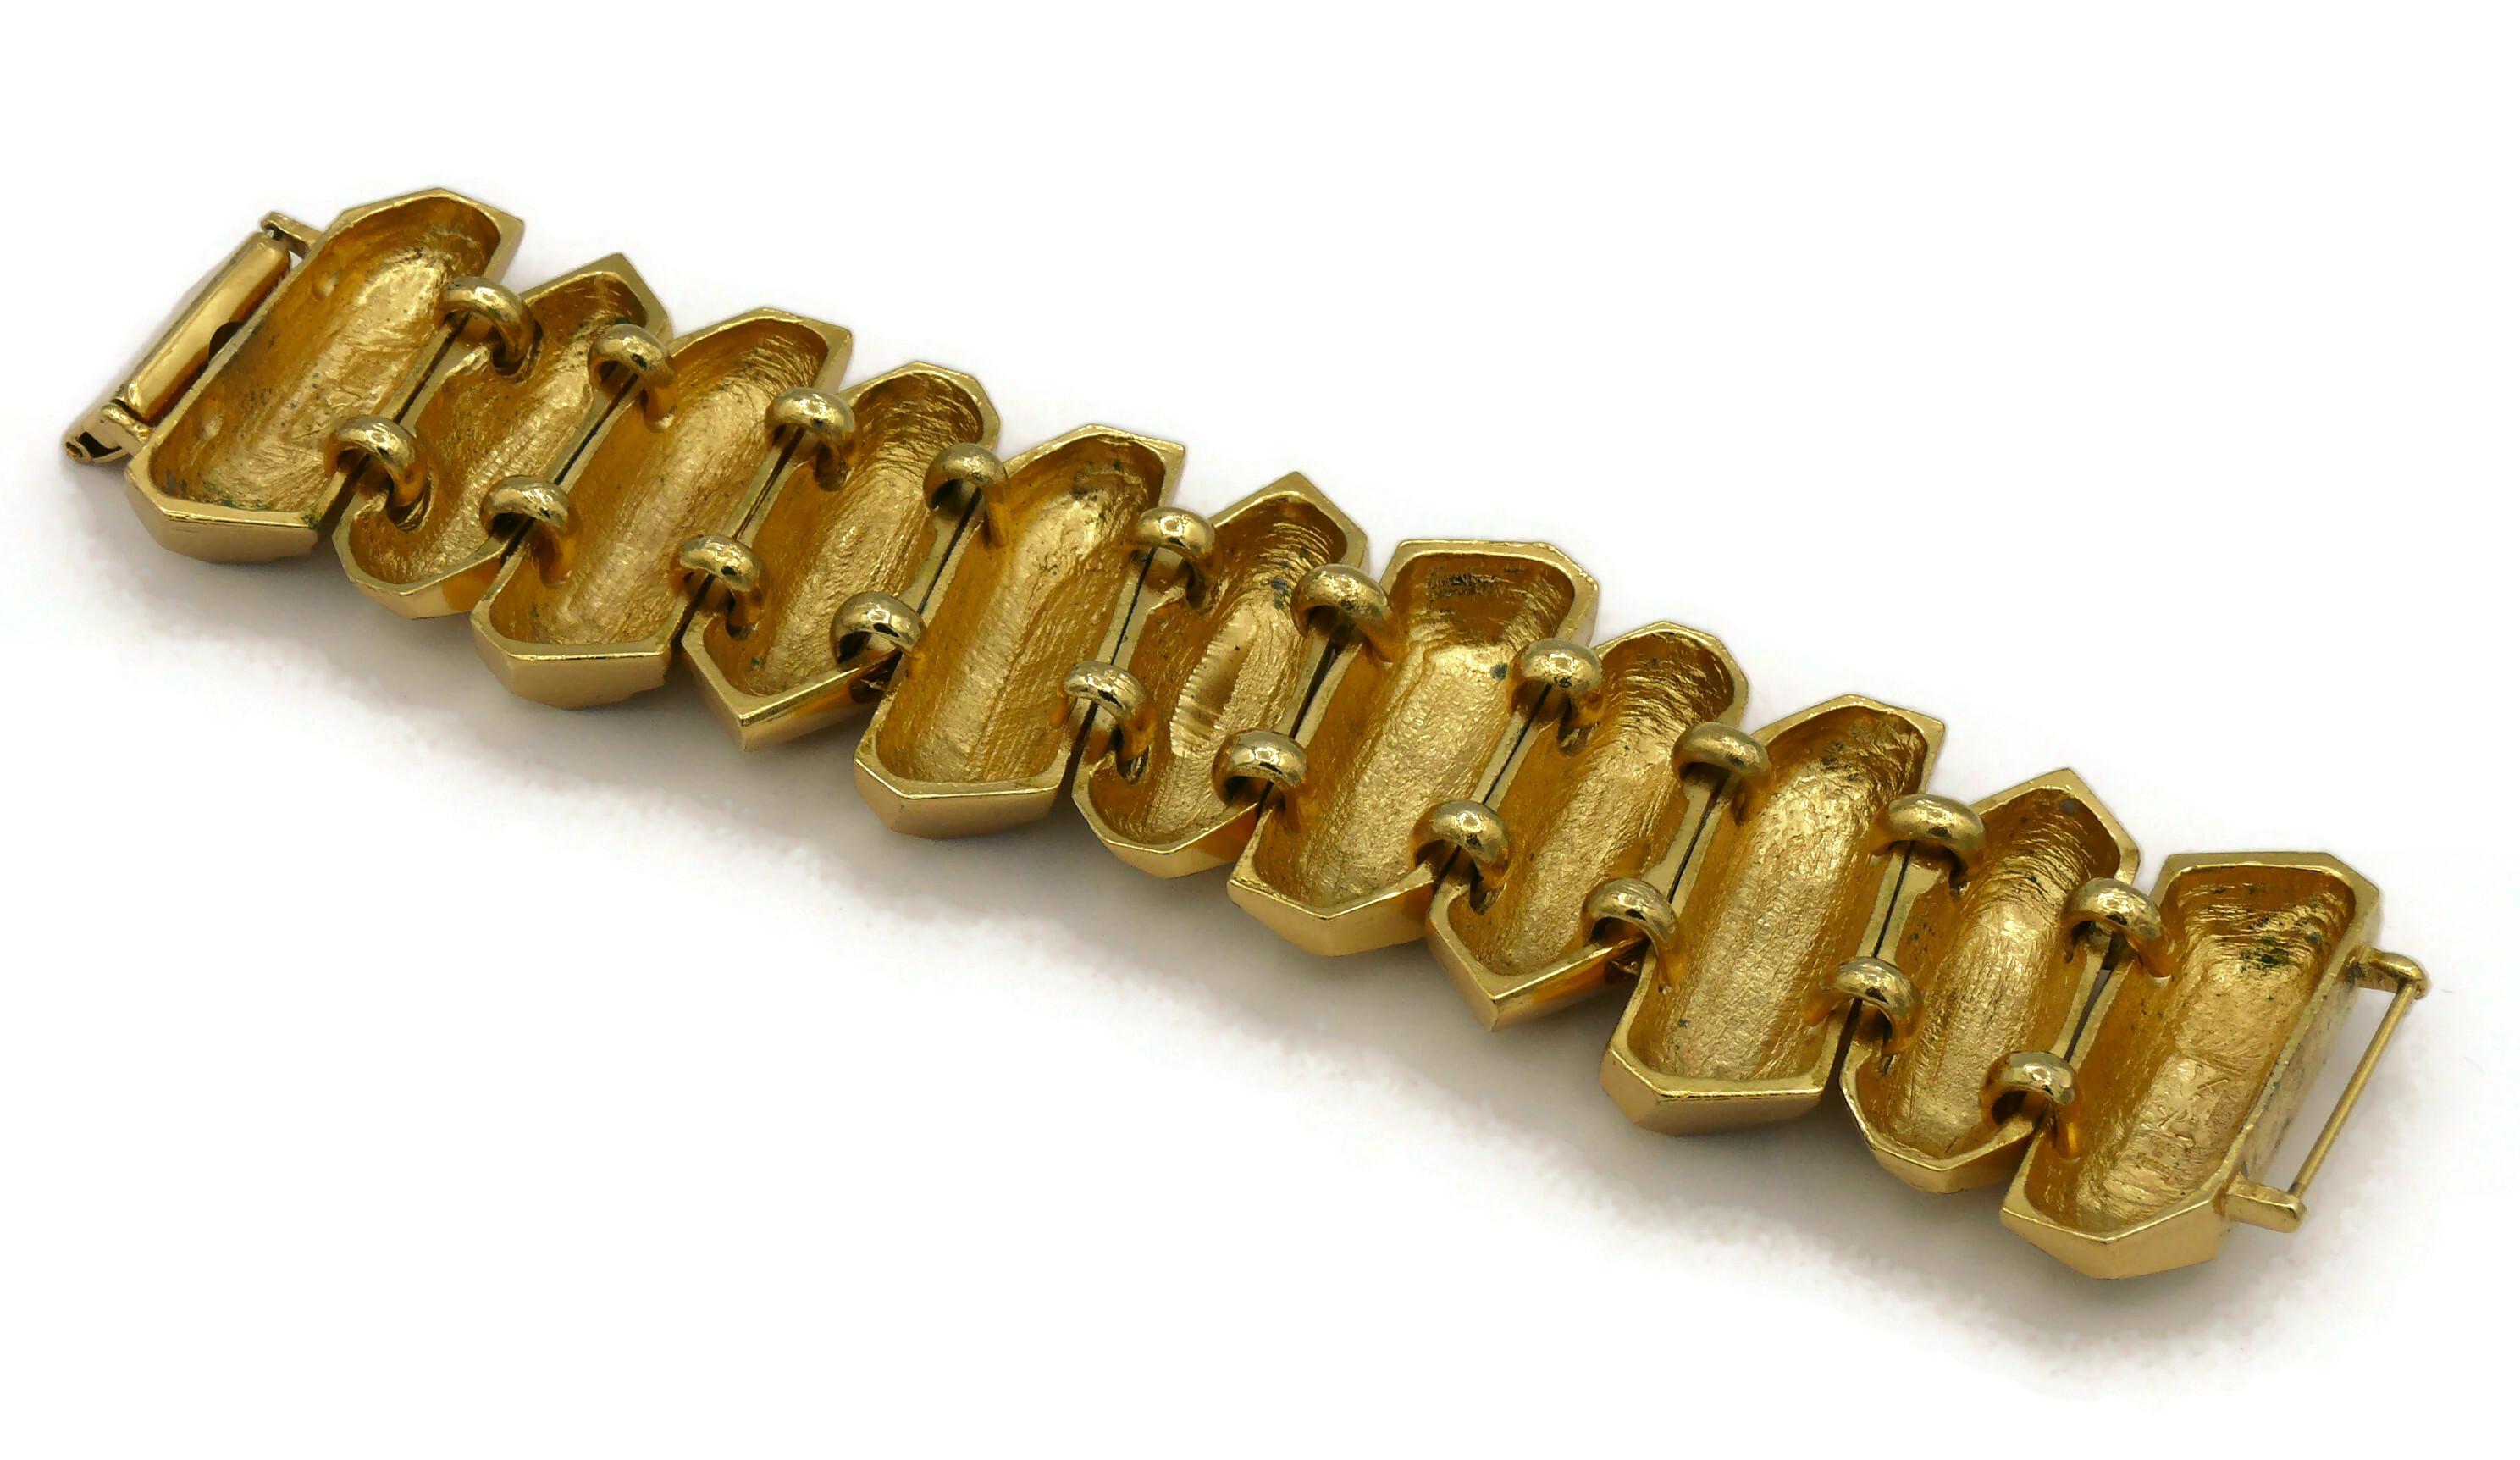 YVES SAINT LAURENT YSL Vintage Gold Tone Rock Crystal Prism Design Cuff Bracelet For Sale 8